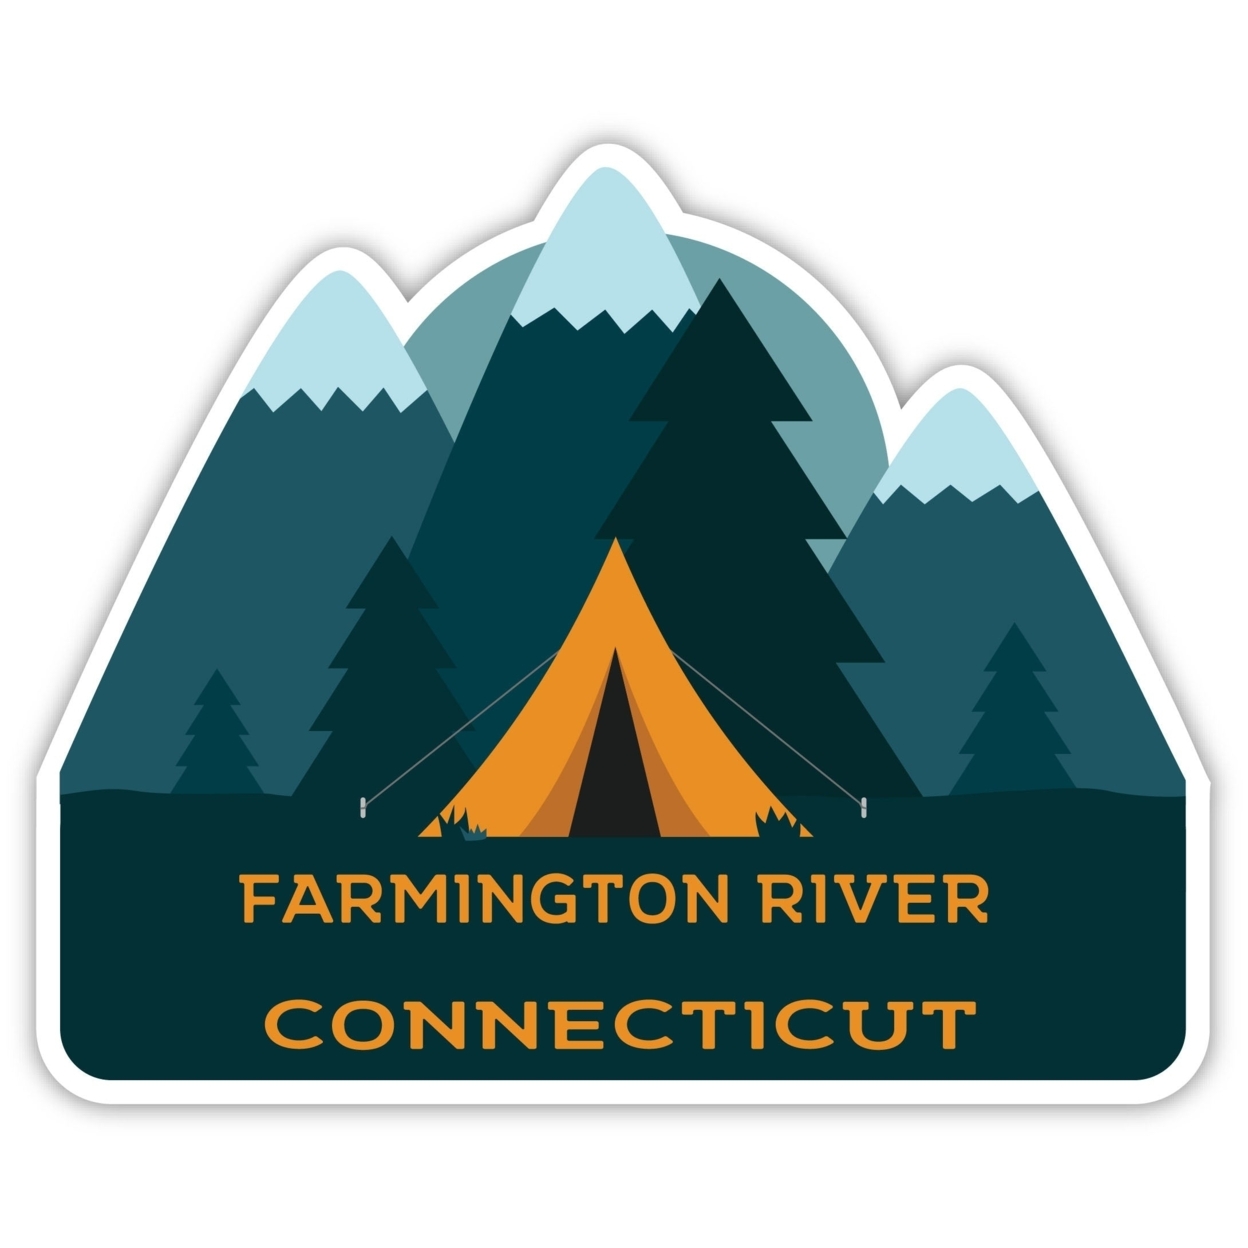 Farmington River Connecticut Souvenir Decorative Stickers (Choose Theme And Size) - Single Unit, 4-Inch, Tent